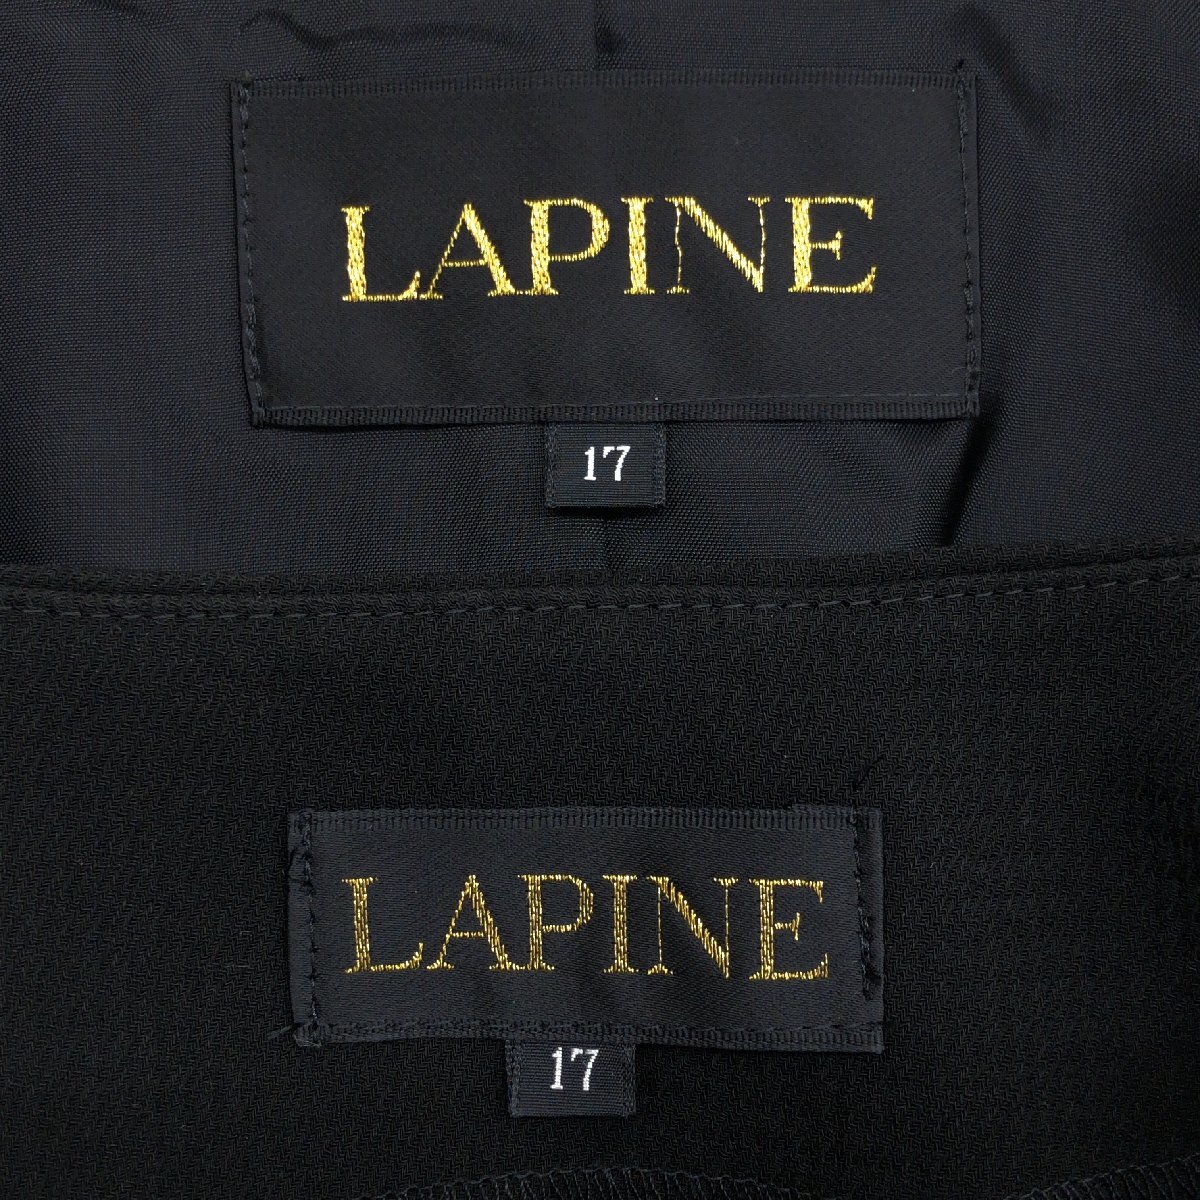 ●LAPINE ラピーヌ 3ピース フォーマルスーツ 上下セットアップ 17(3XL) 黒 ブラック ロングスカート ゆったり 大きいサイズ 4L 日本製_画像3